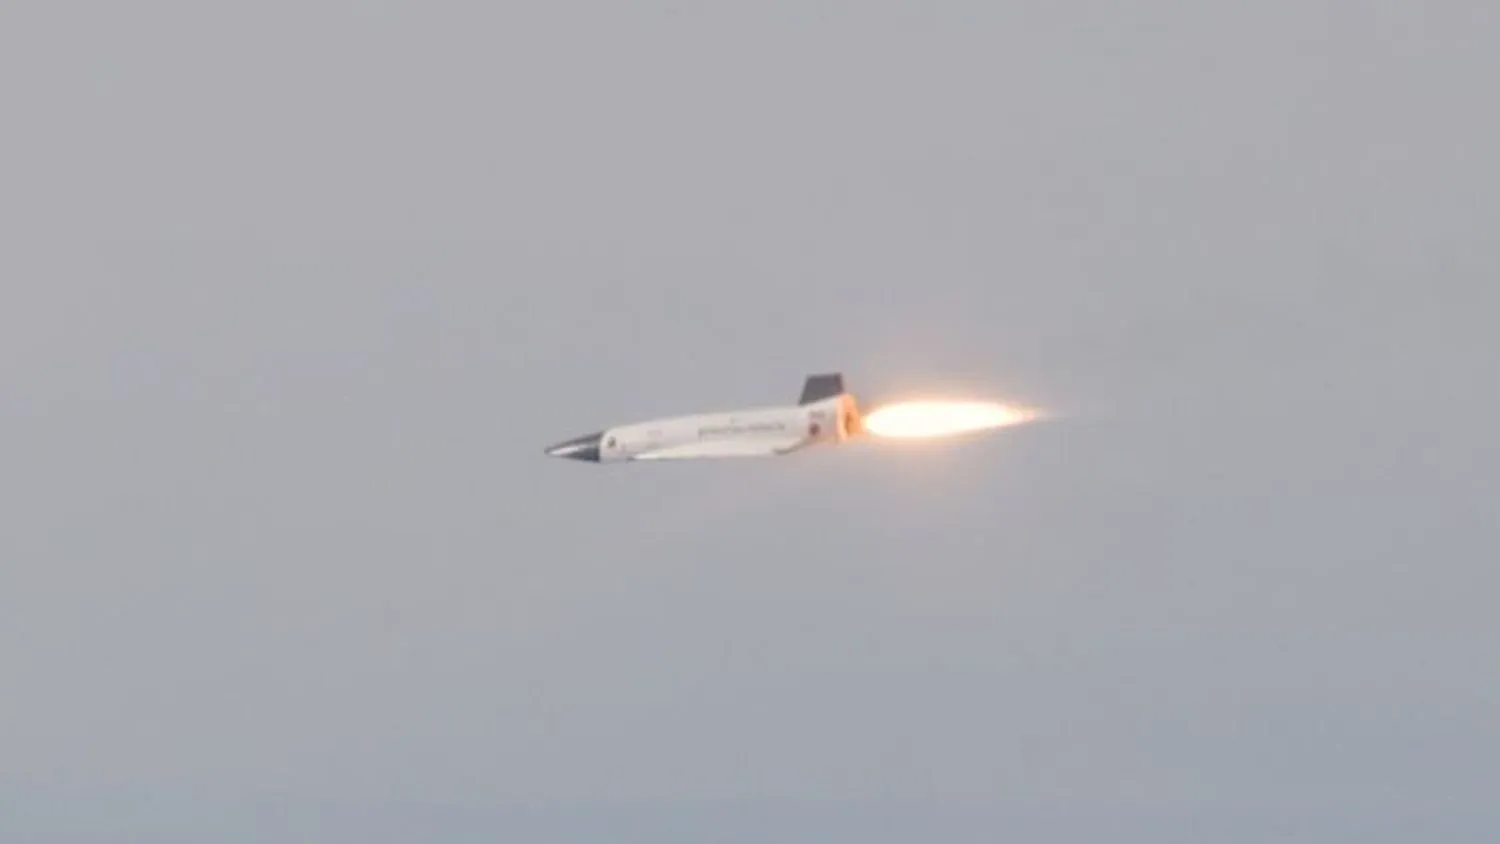 Ein kleiner Prototyp zündet sein Raketentriebwerk während eines Testflugs mit hoher Überschallgeschwindigkeit.